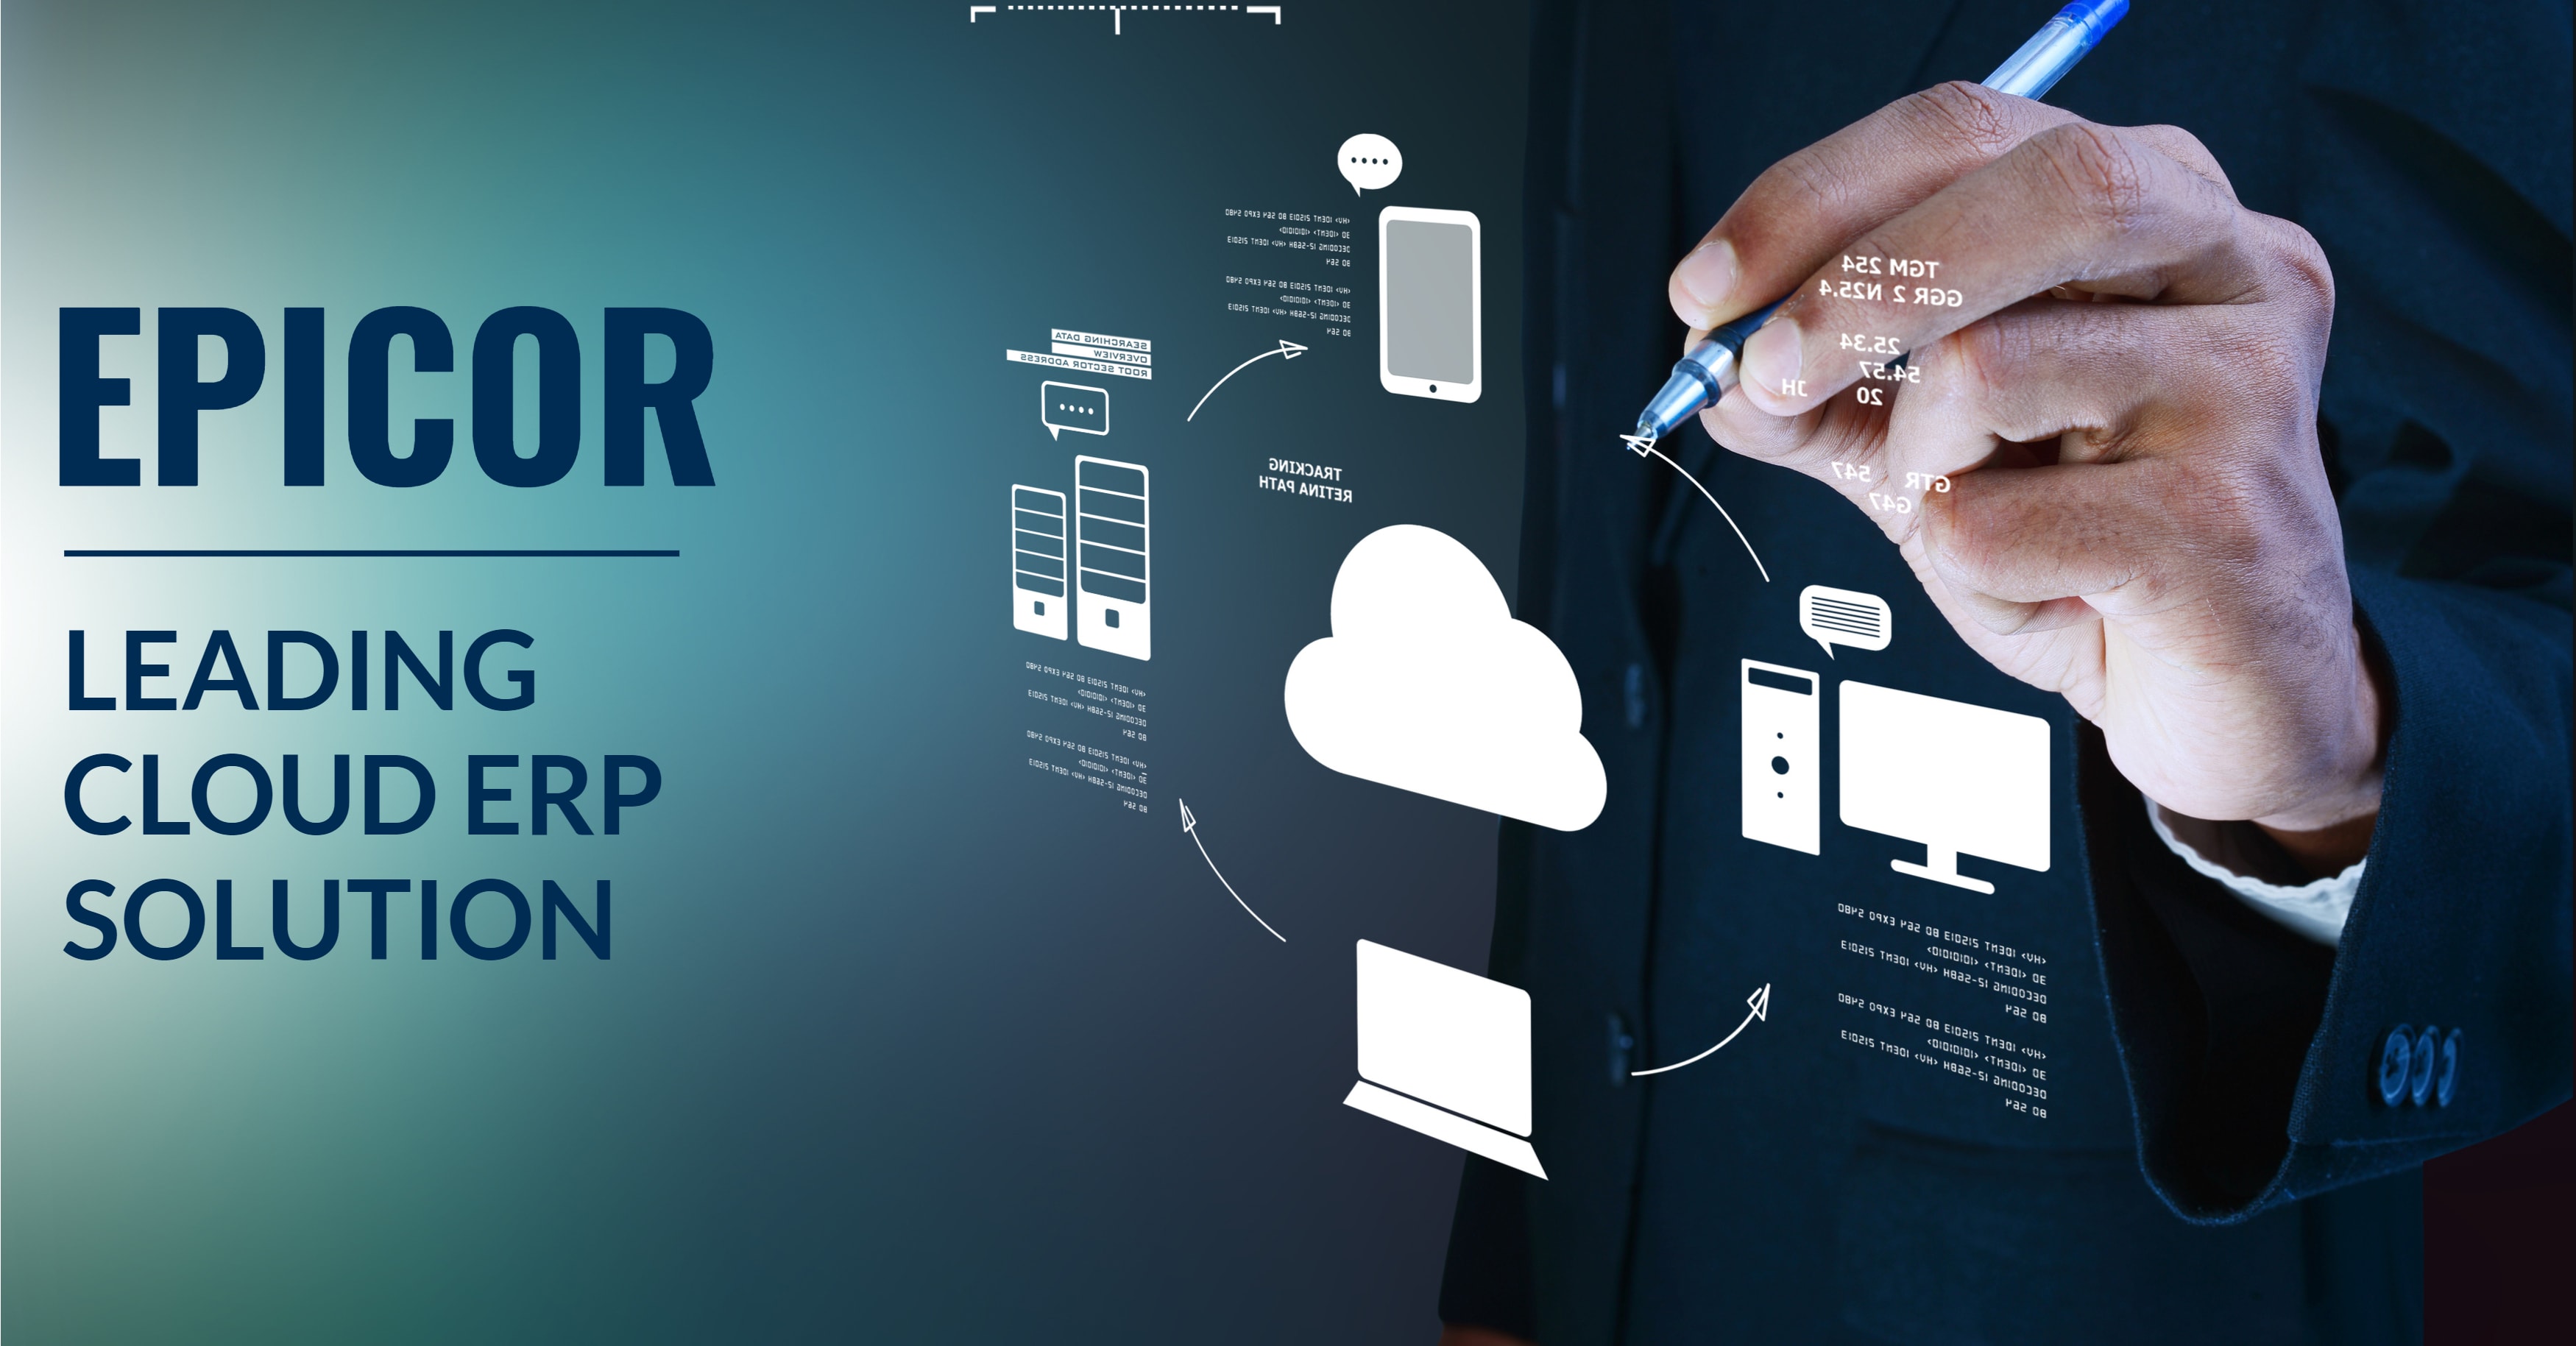 Epicor Gartner Cloud ERP